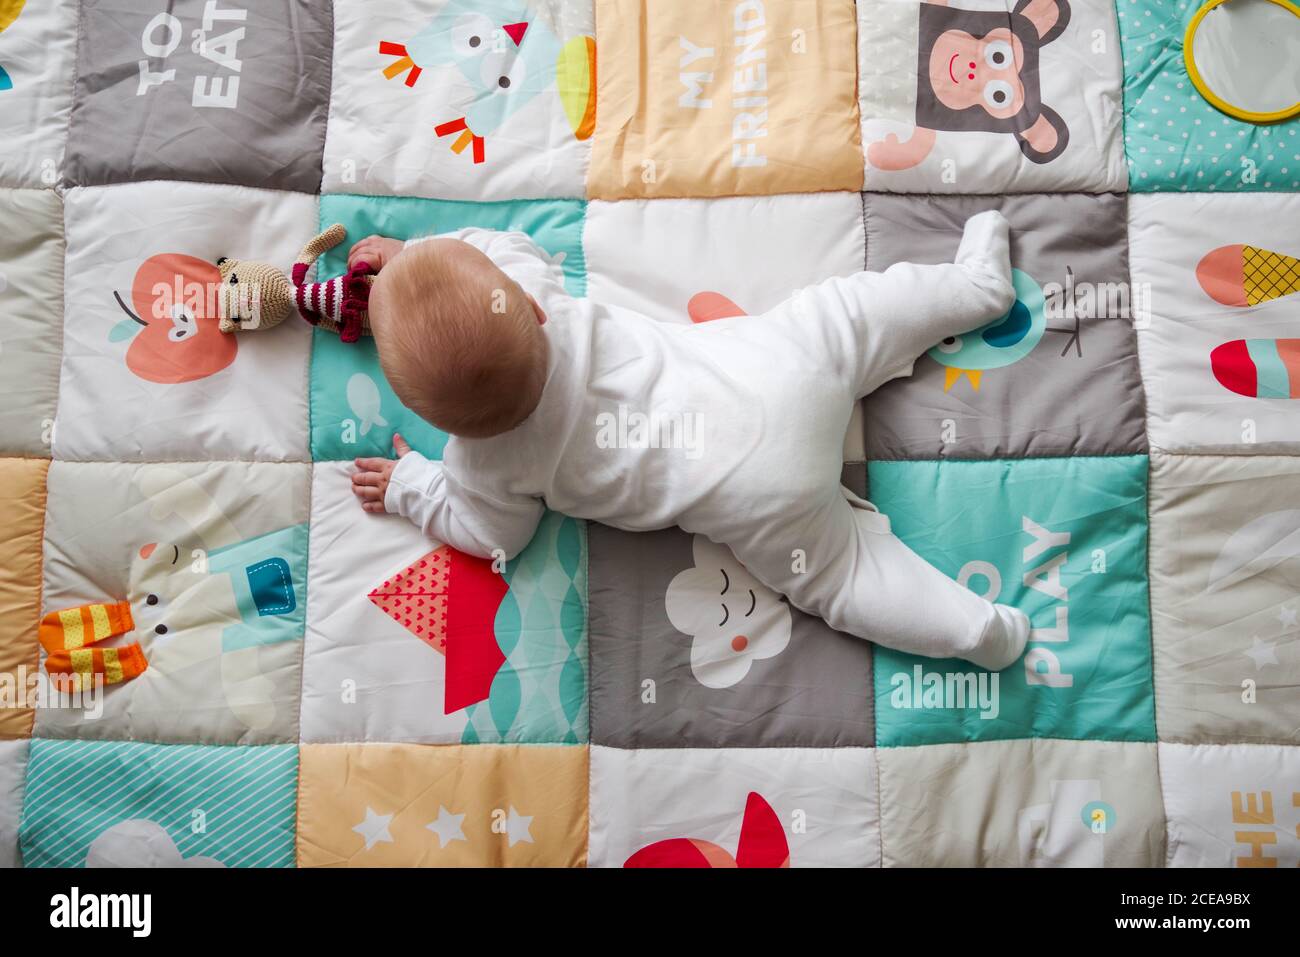 bébé de 5 mois allongé sur un tapis de jeu, arrivant à la recherche d'un jouet Banque D'Images